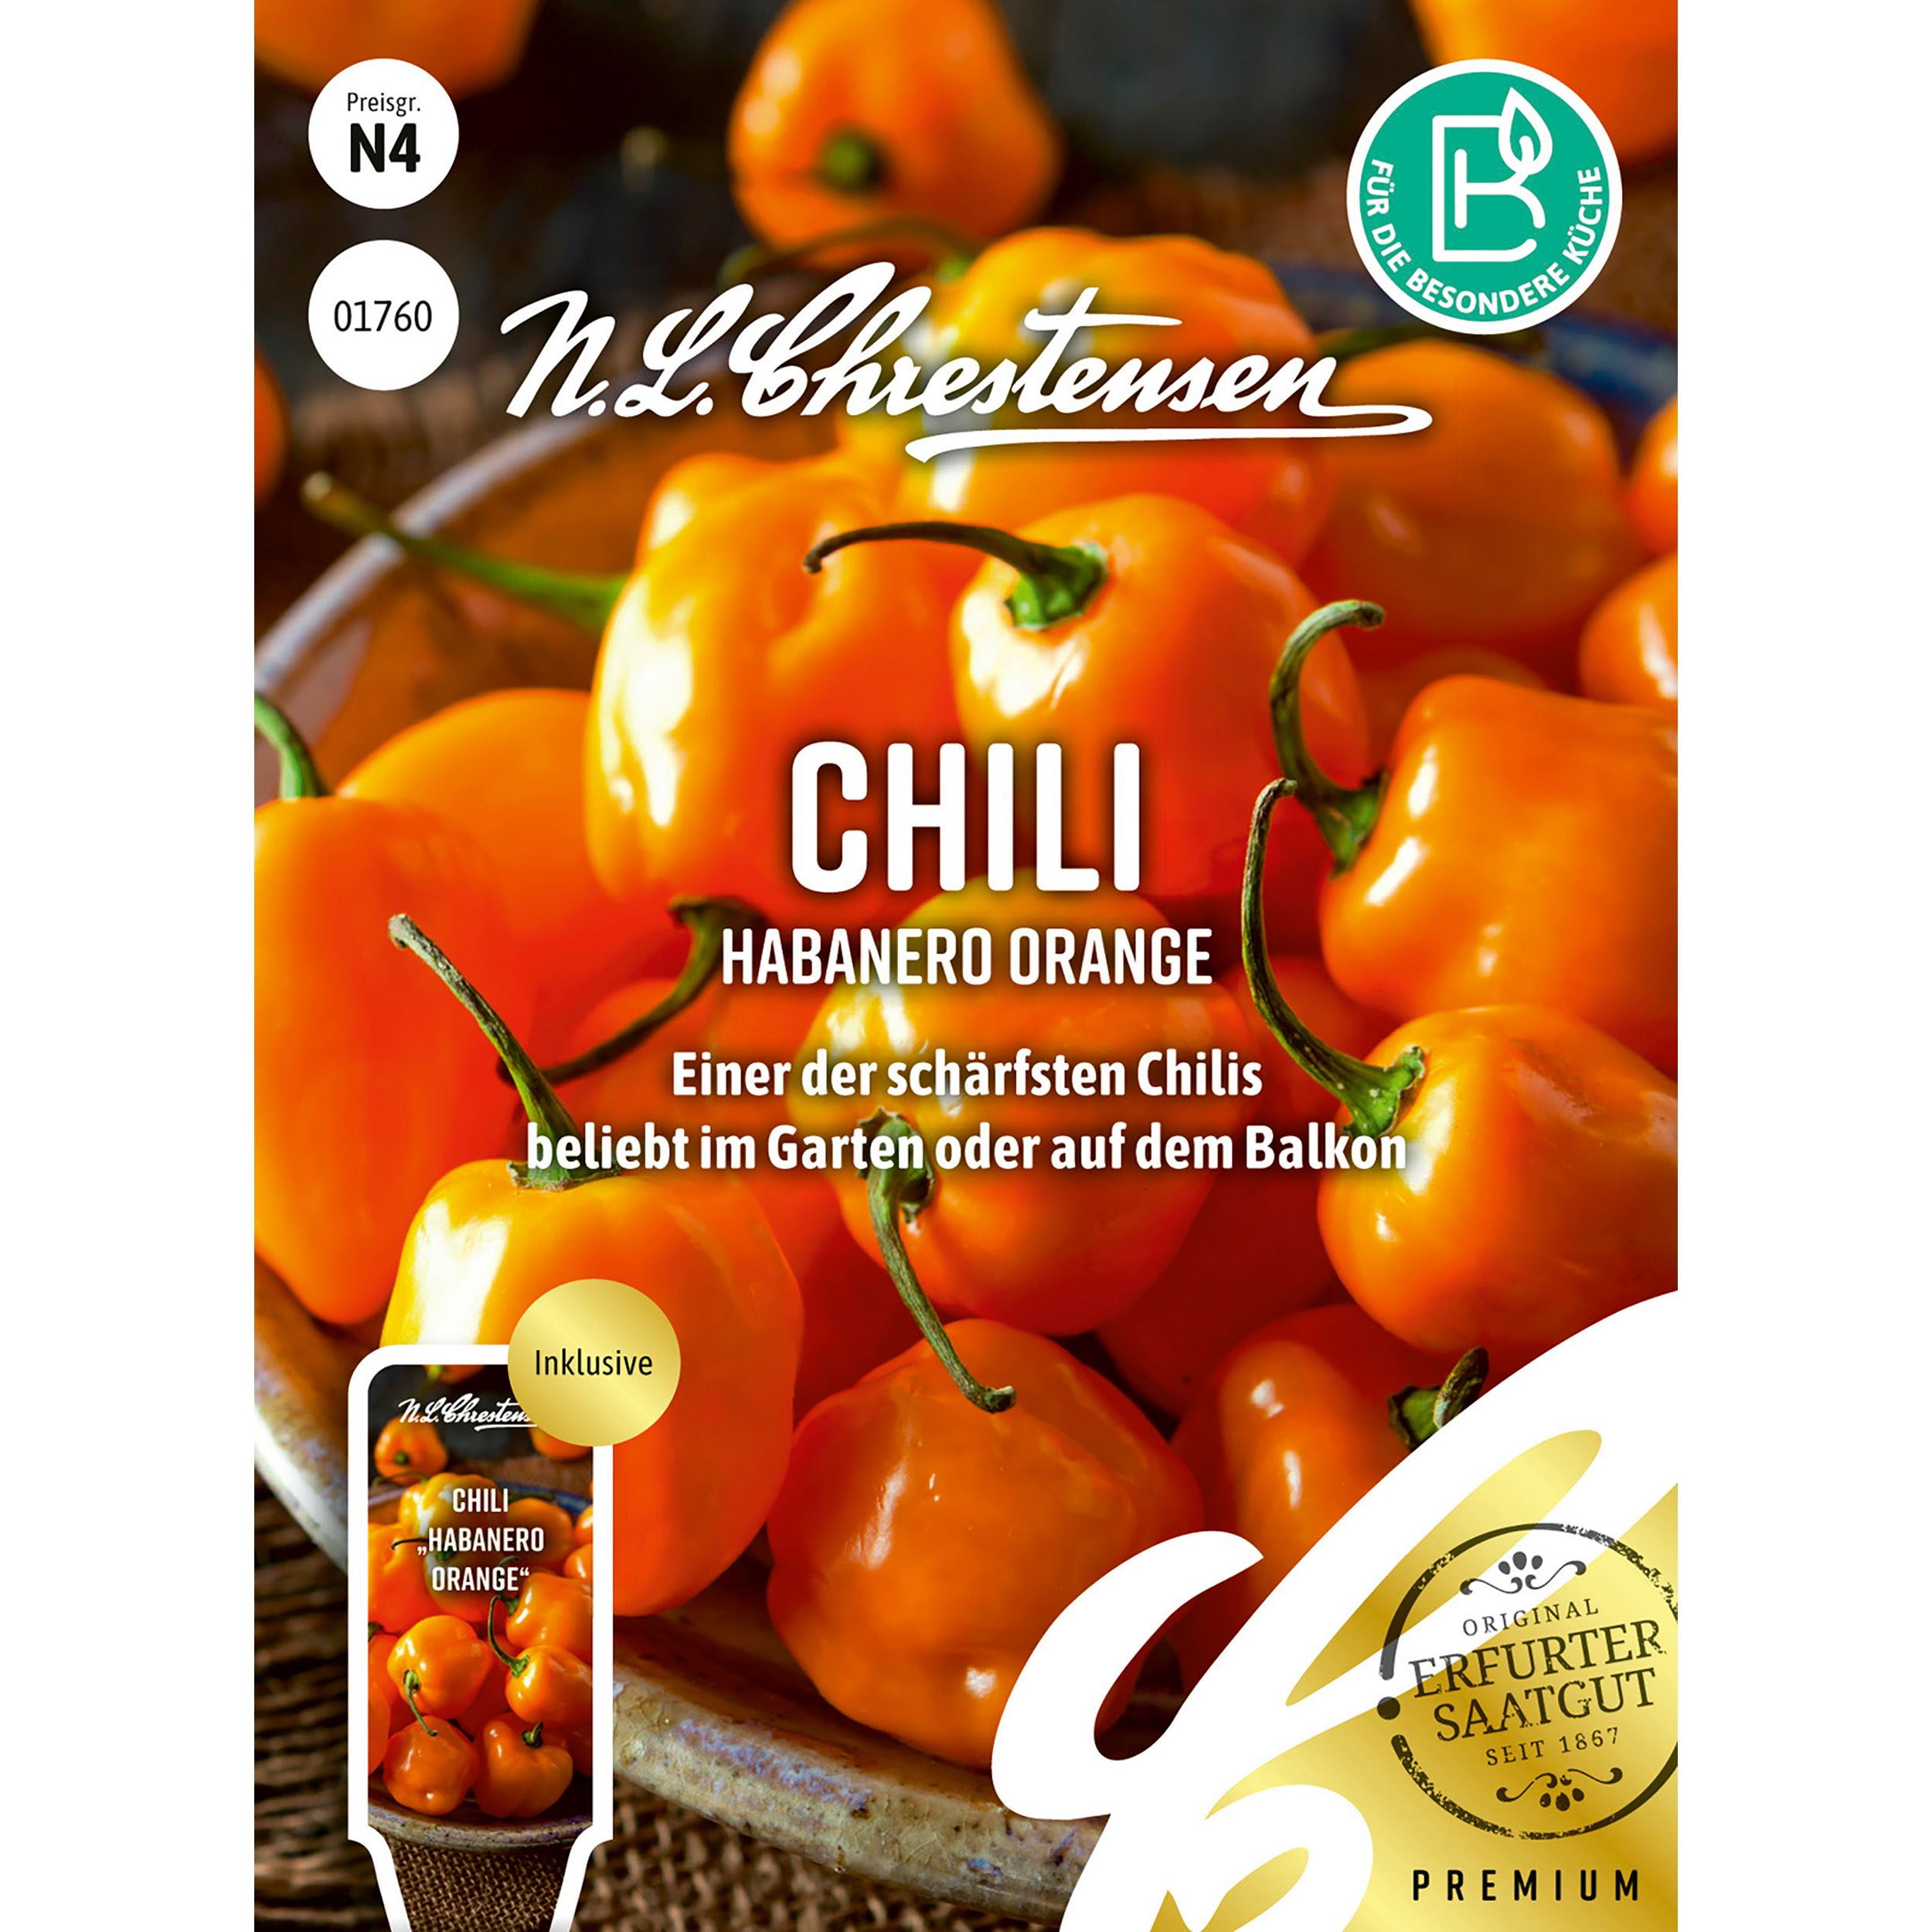 Chili Habanero Orange